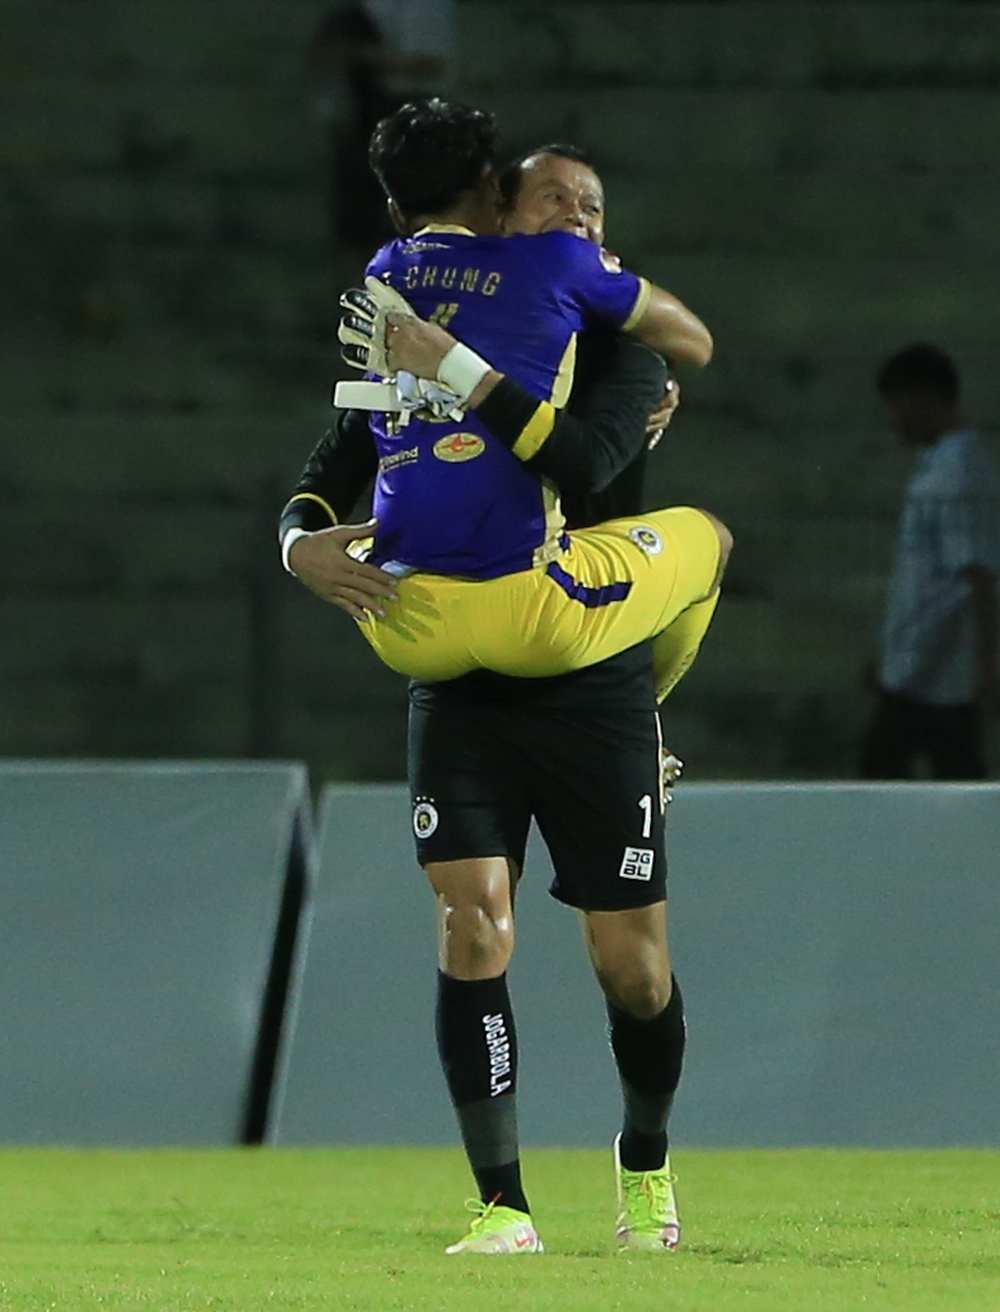 Thành Chung cứu thua đưa Hà Nội FC lên đỉnh bảng, nhảy lên ôm chầm Tấn Trường ăn mừng - Ảnh 3.